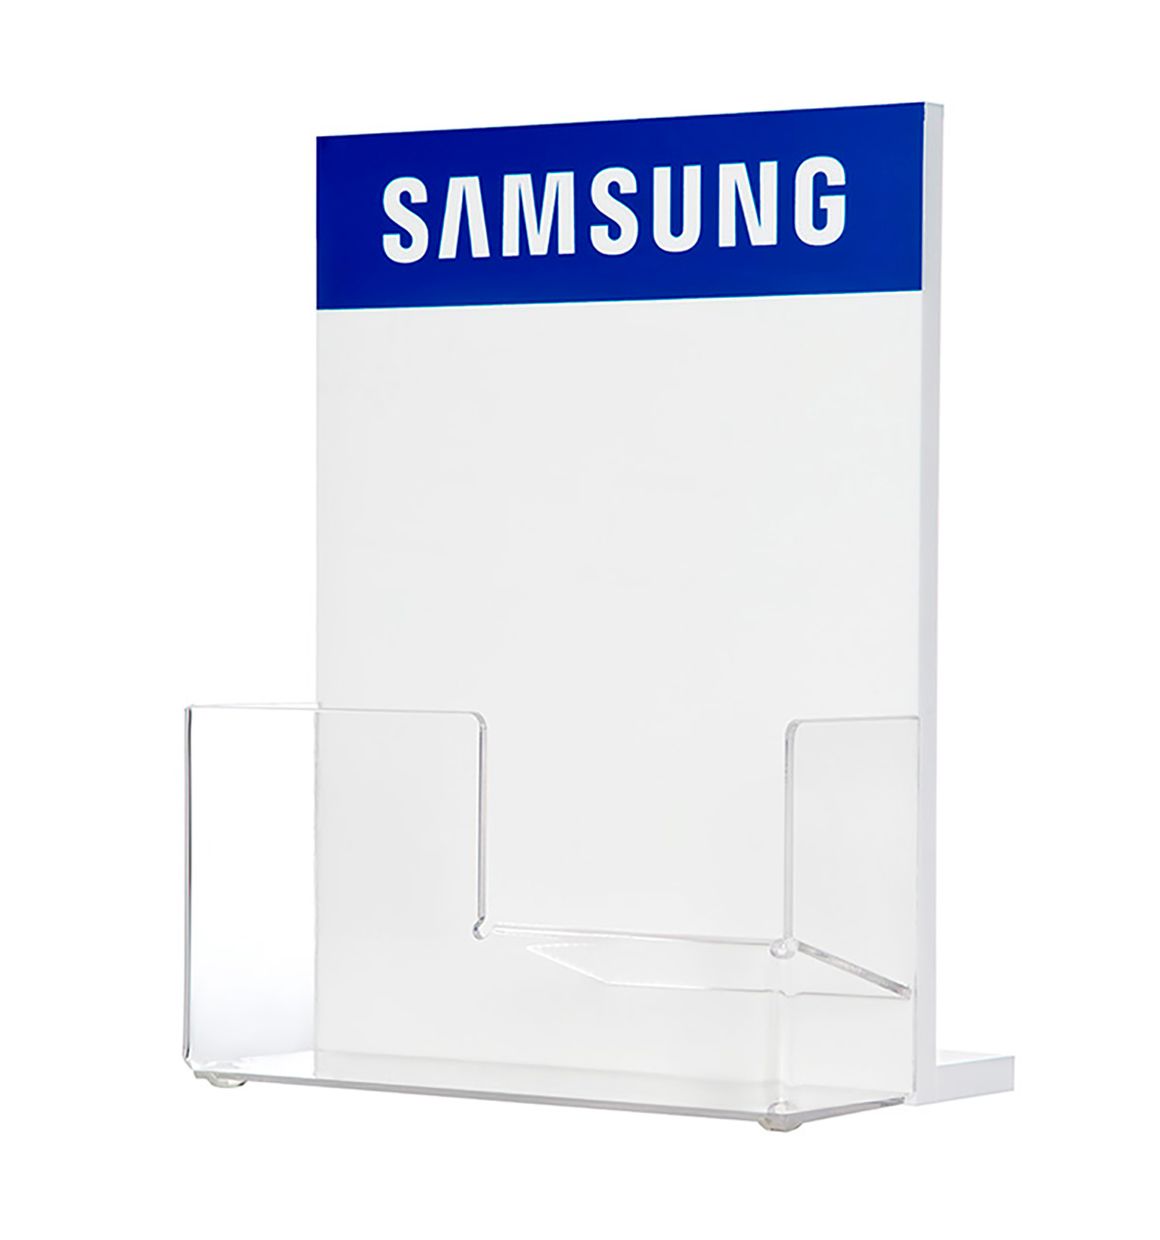 Præsentationsdisplay til Samsung